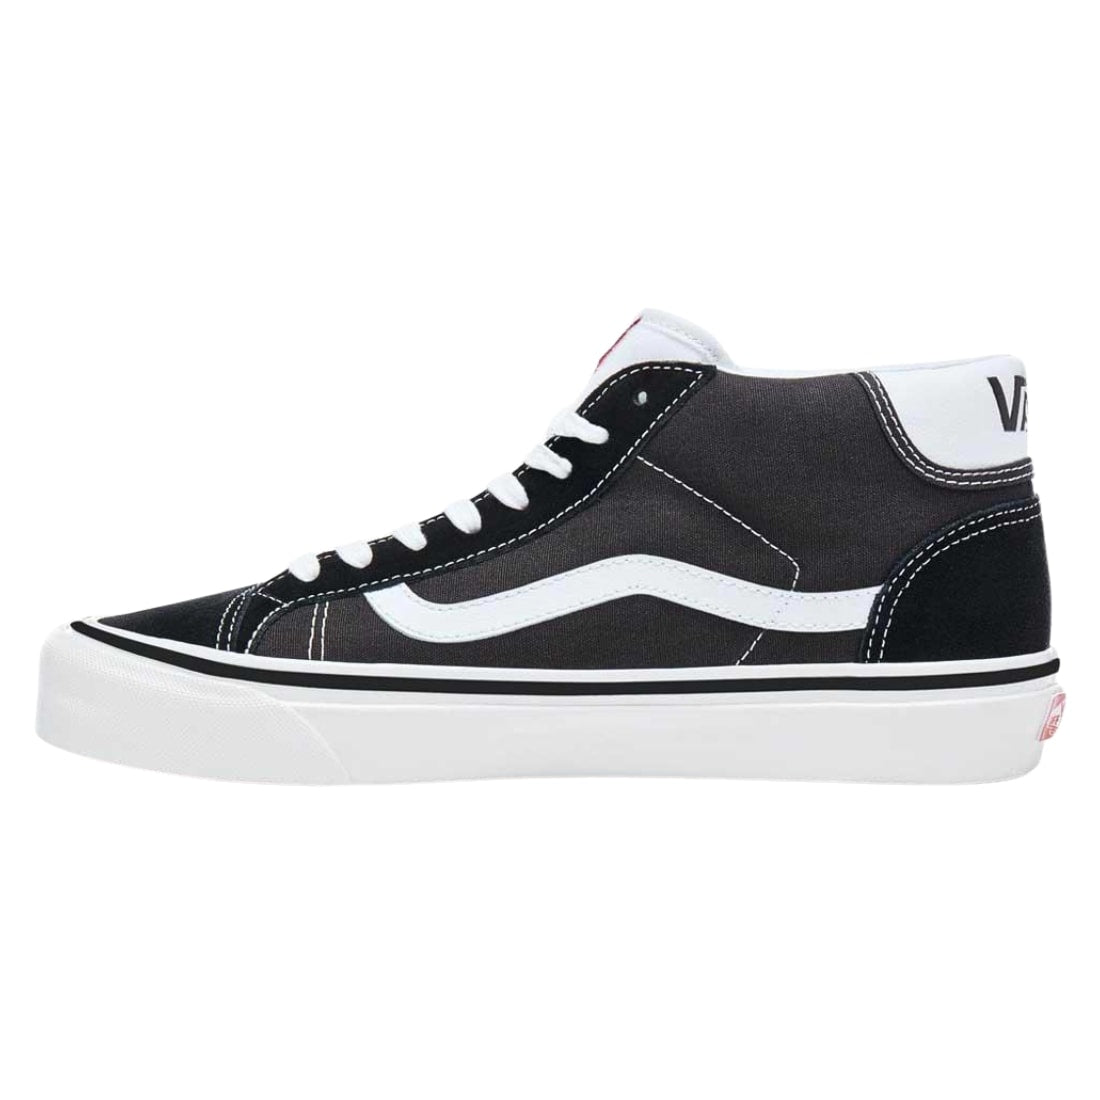 Vans Mid Skool 37 Shoes - Black/True White - Mens High Top Trainers by Vans